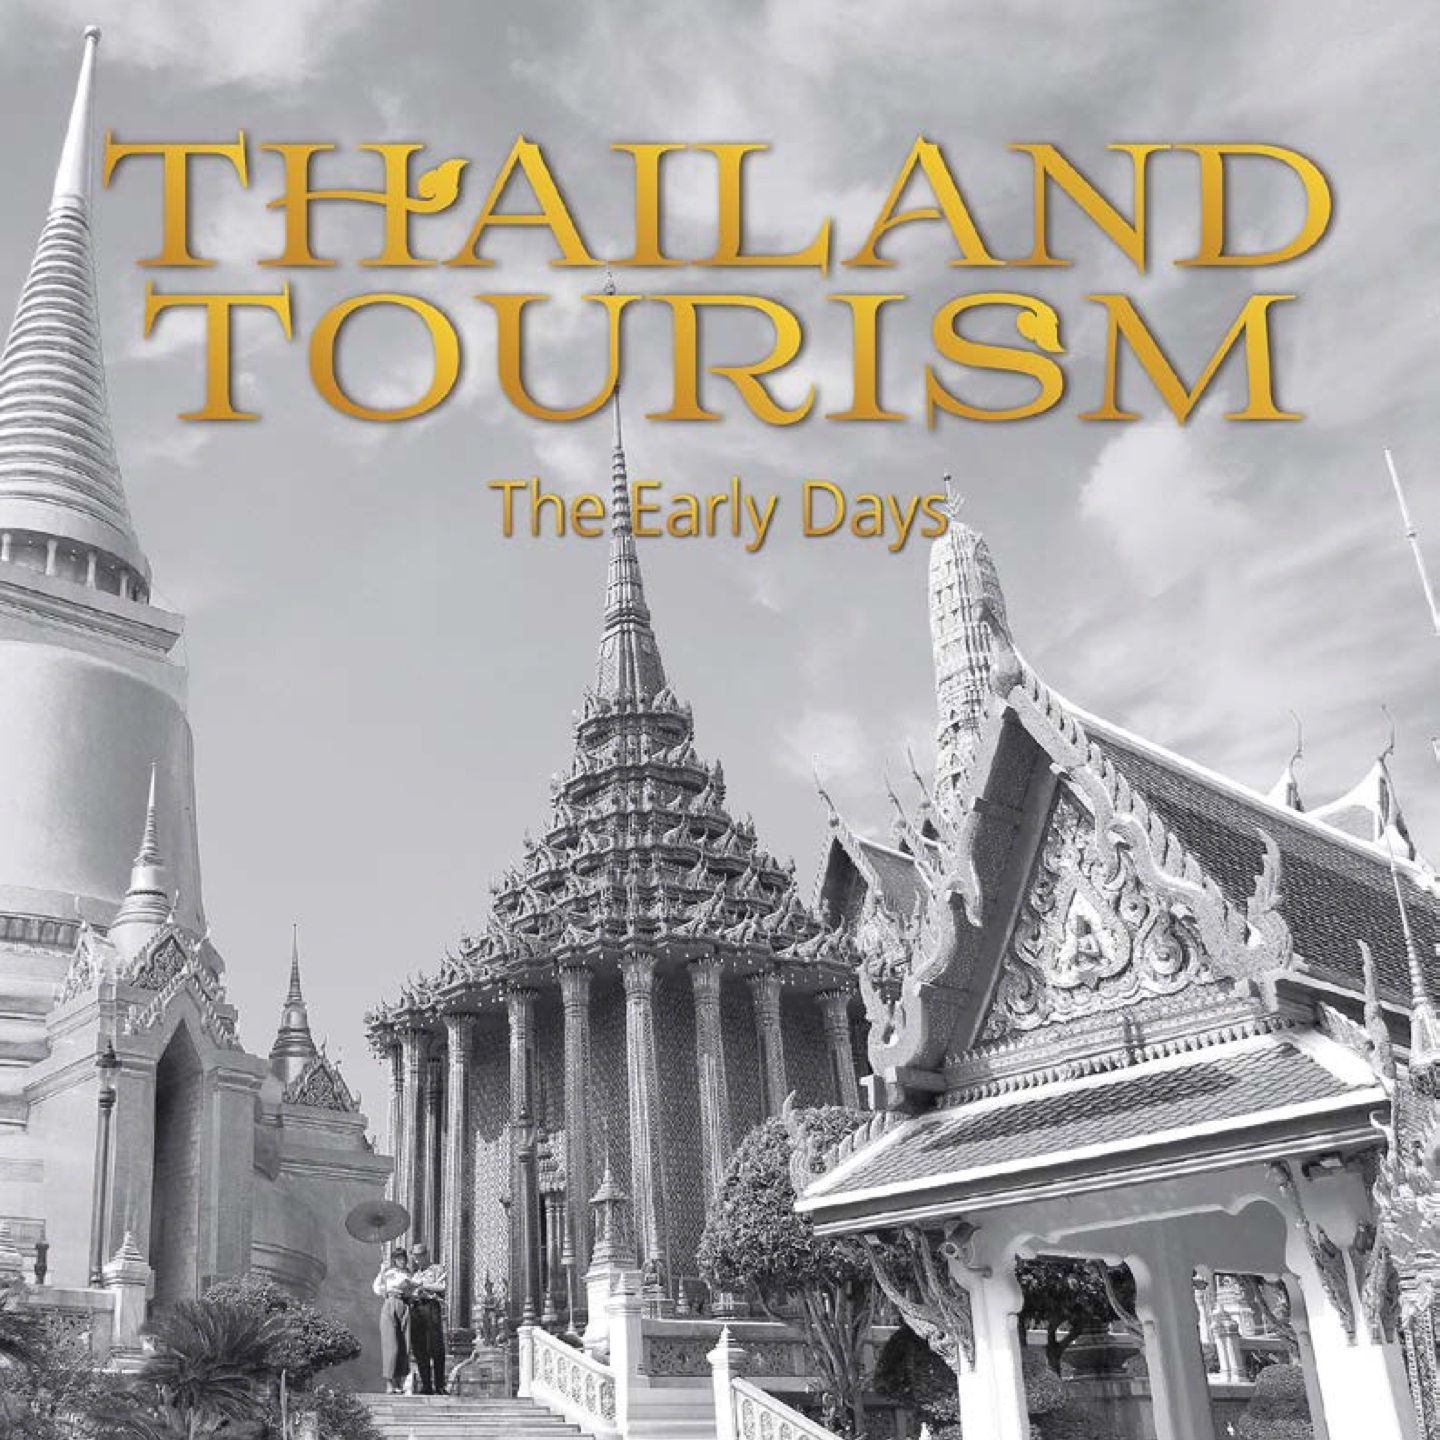 thailand tourism company